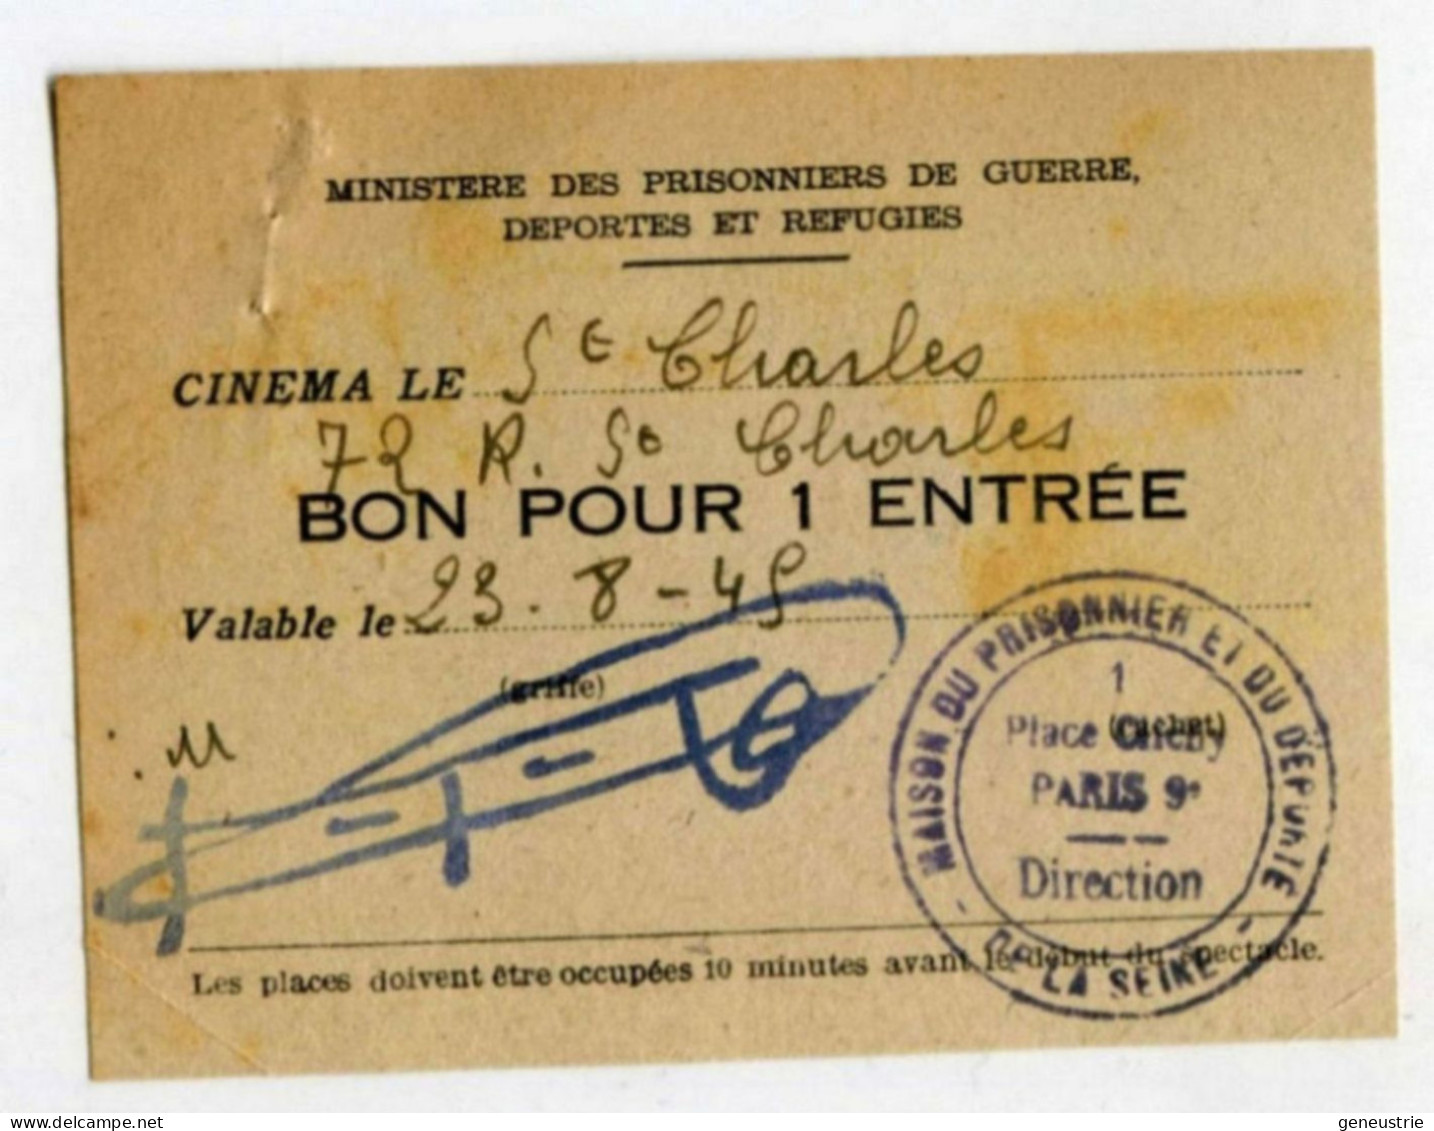 WW2 Bon De Nécessité "Bon Pour 1 Entrée" Ticket Cinéma St Charles - Maison Du Prisonnier Et Du Déporté - WWII - Notgeld